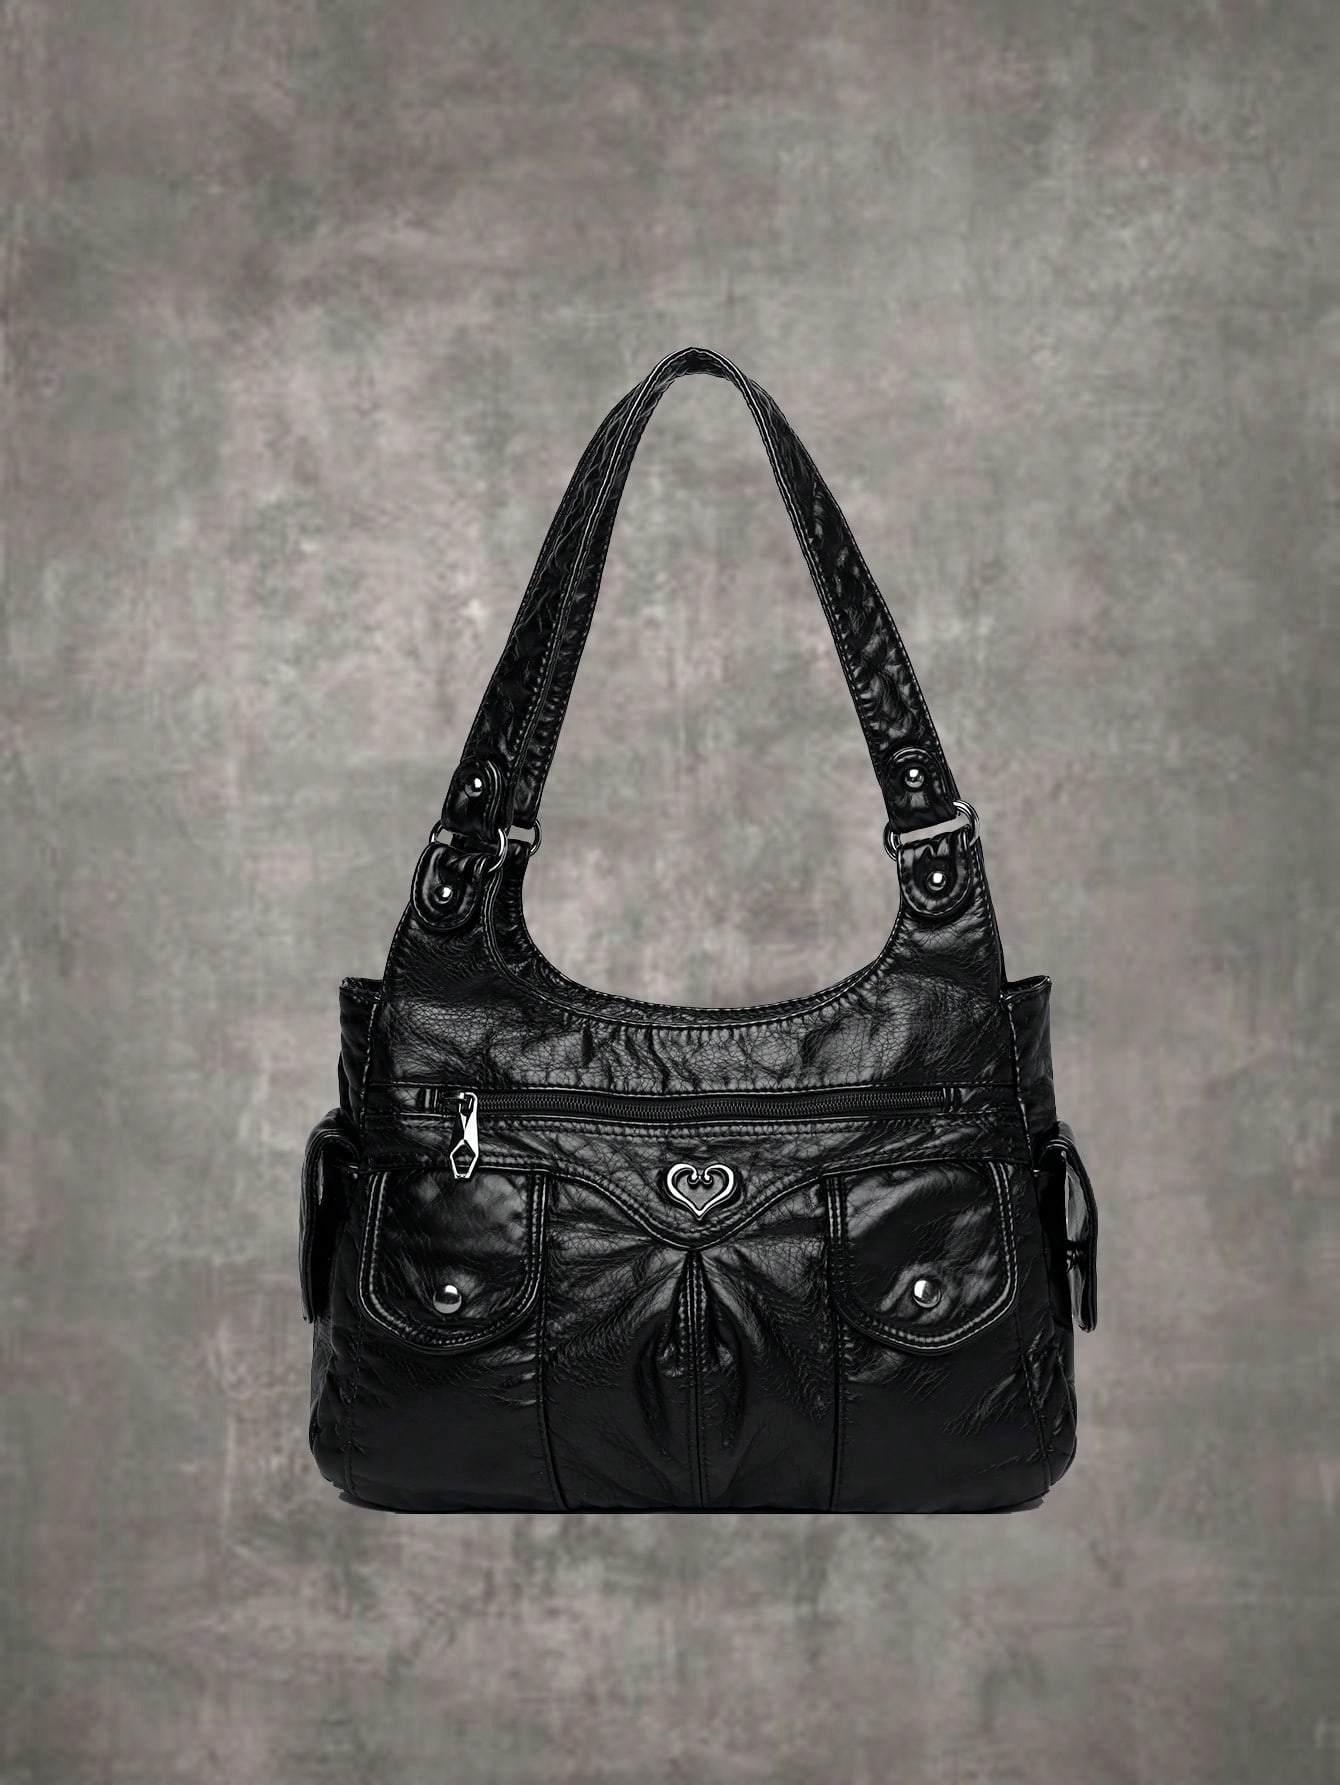 ROMWE Повседневная женская сумка на плечо в стиле гранж-панк/тоут большая вместительная сумка для поездок на работу, черный